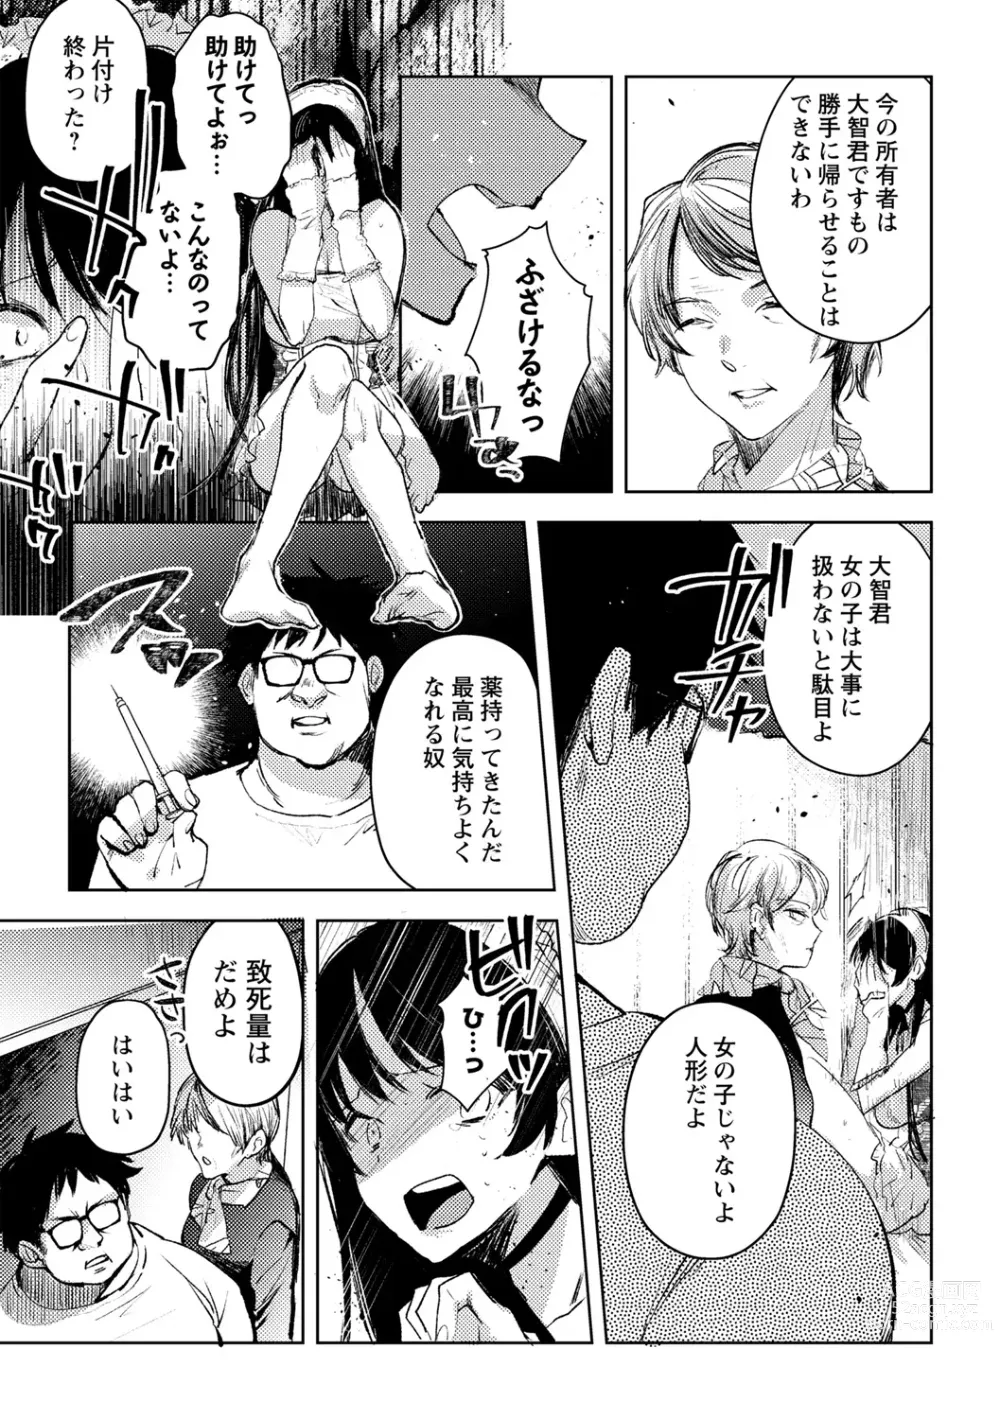 Page 9 of manga Yuuhei  KodoOji no Tou